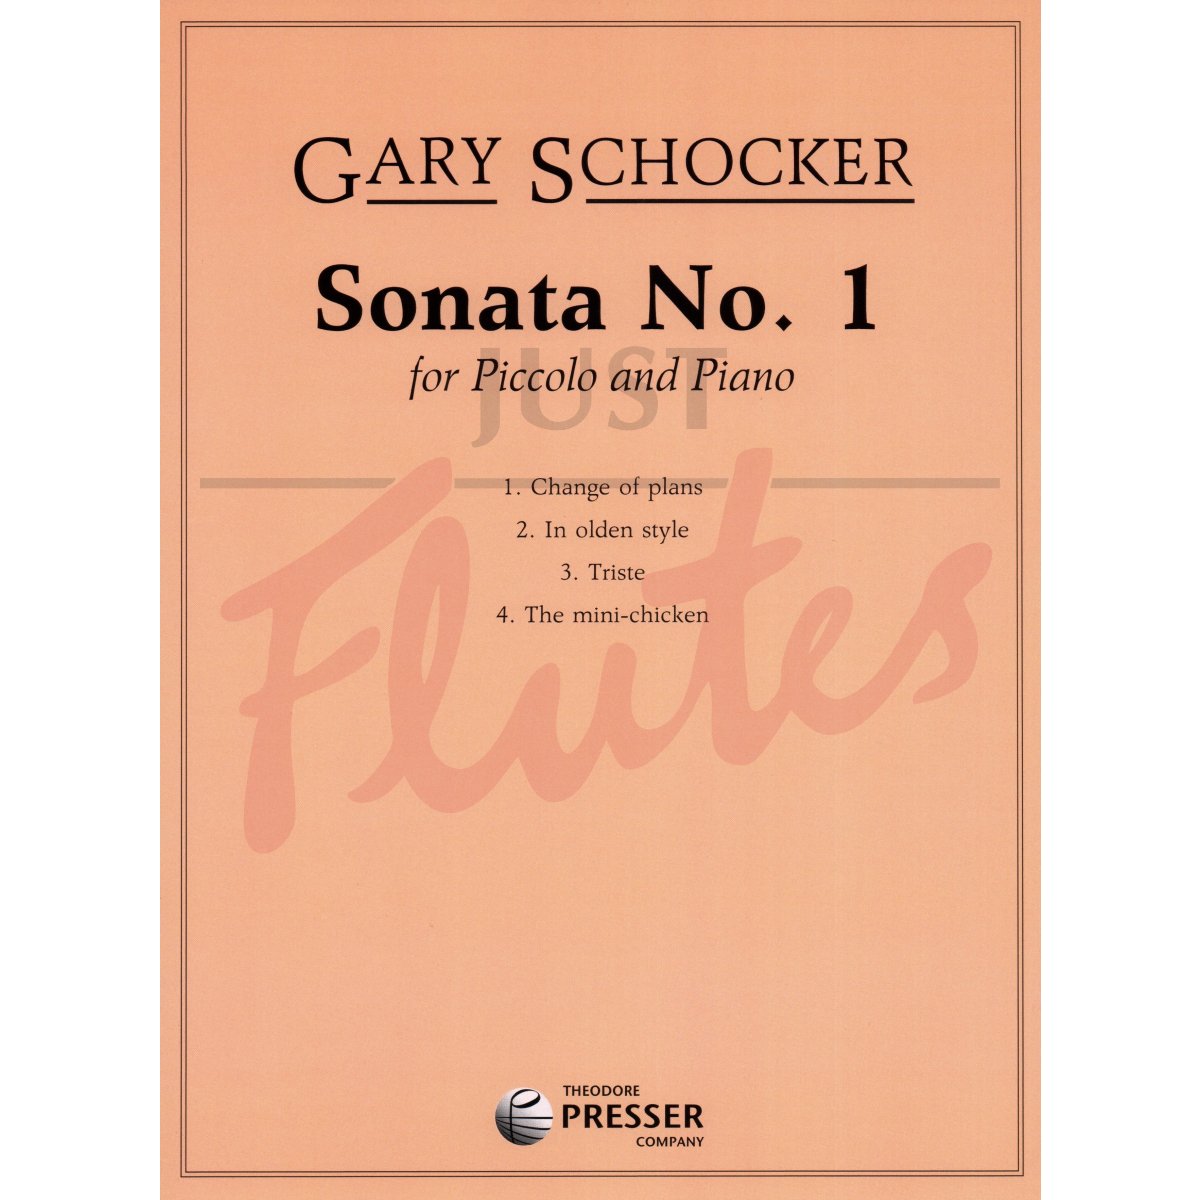 Sonata No. 1 for Piccolo and Piano